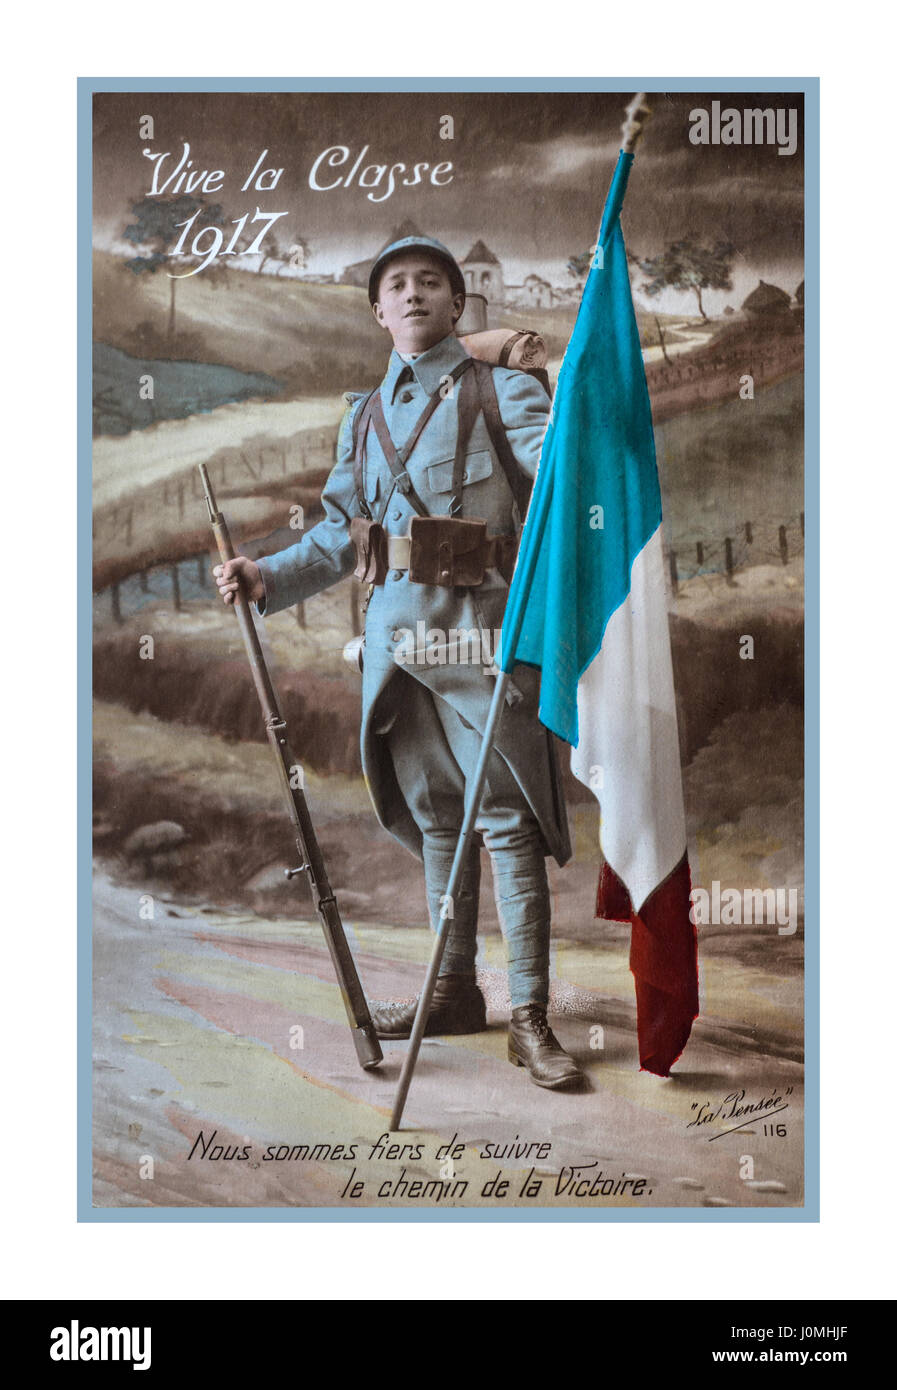 WW1 1914-1918 Carte postale de propagande avec un soldat français holding drapeau tricolore datant de 1917 du front en France, "vive la classe de 1917...Nous sommes fiers de suivre le chemin de la victoire..' Banque D'Images